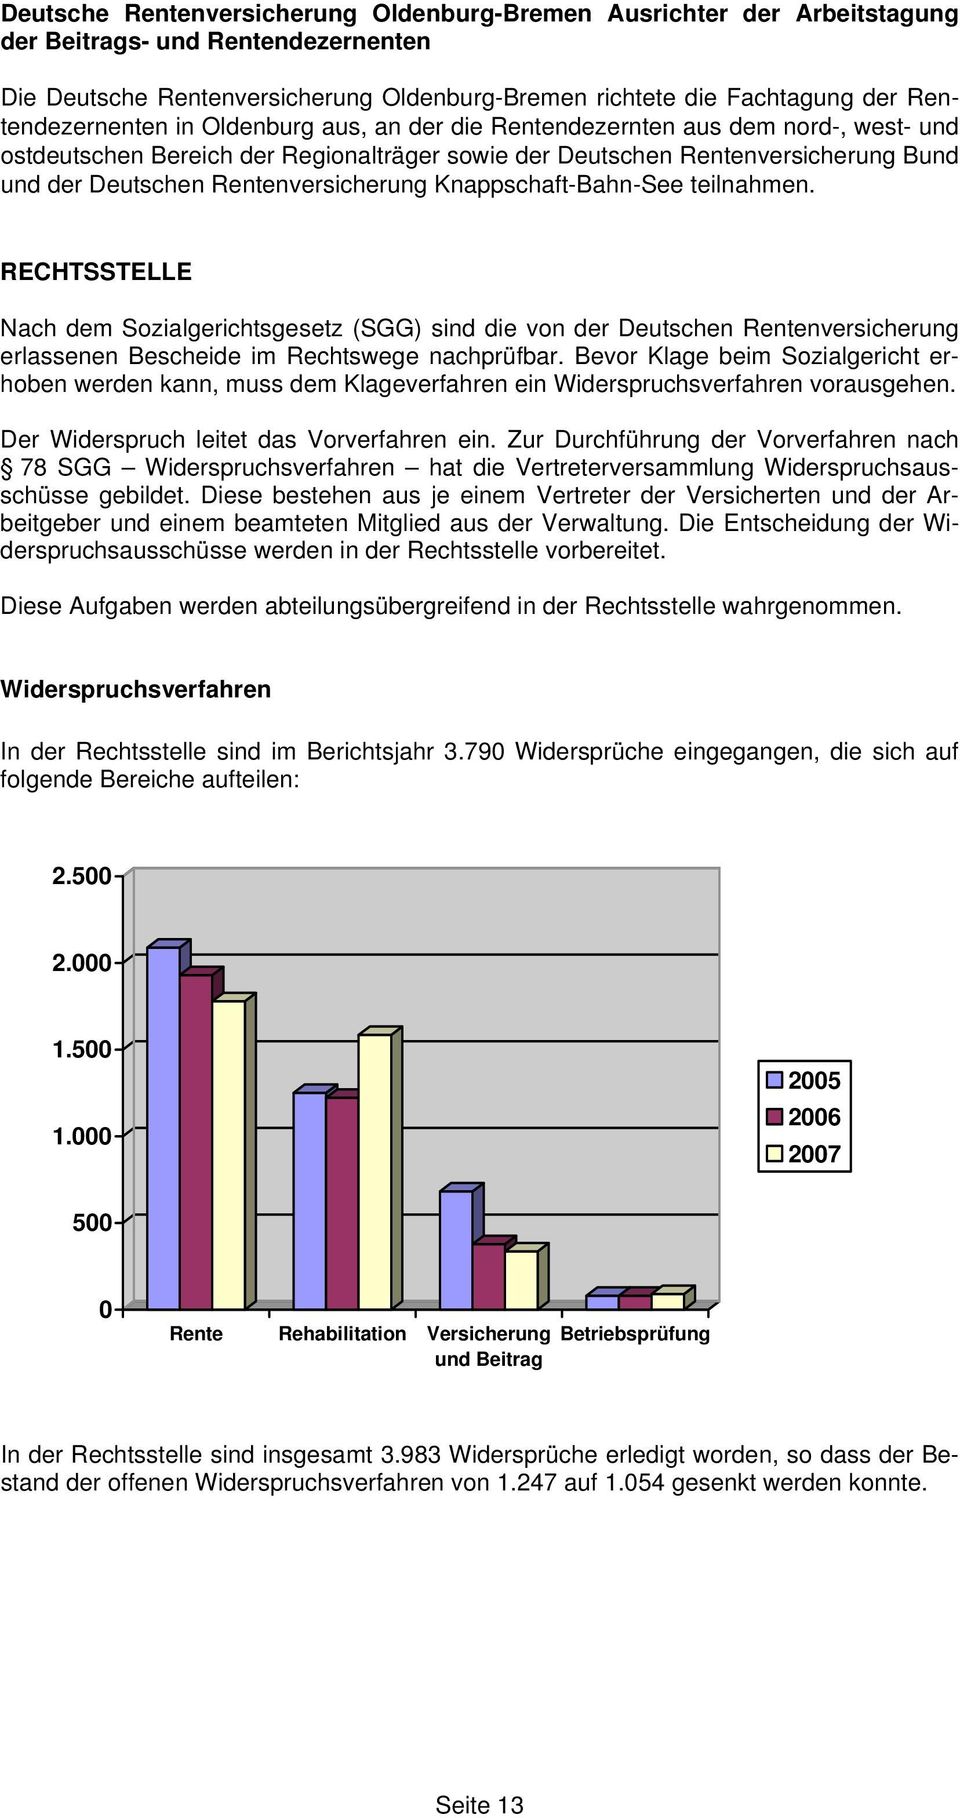 Geschäftsbericht 2007 Deutsche Rentenversicherung Oldenburg Bremen Pdf